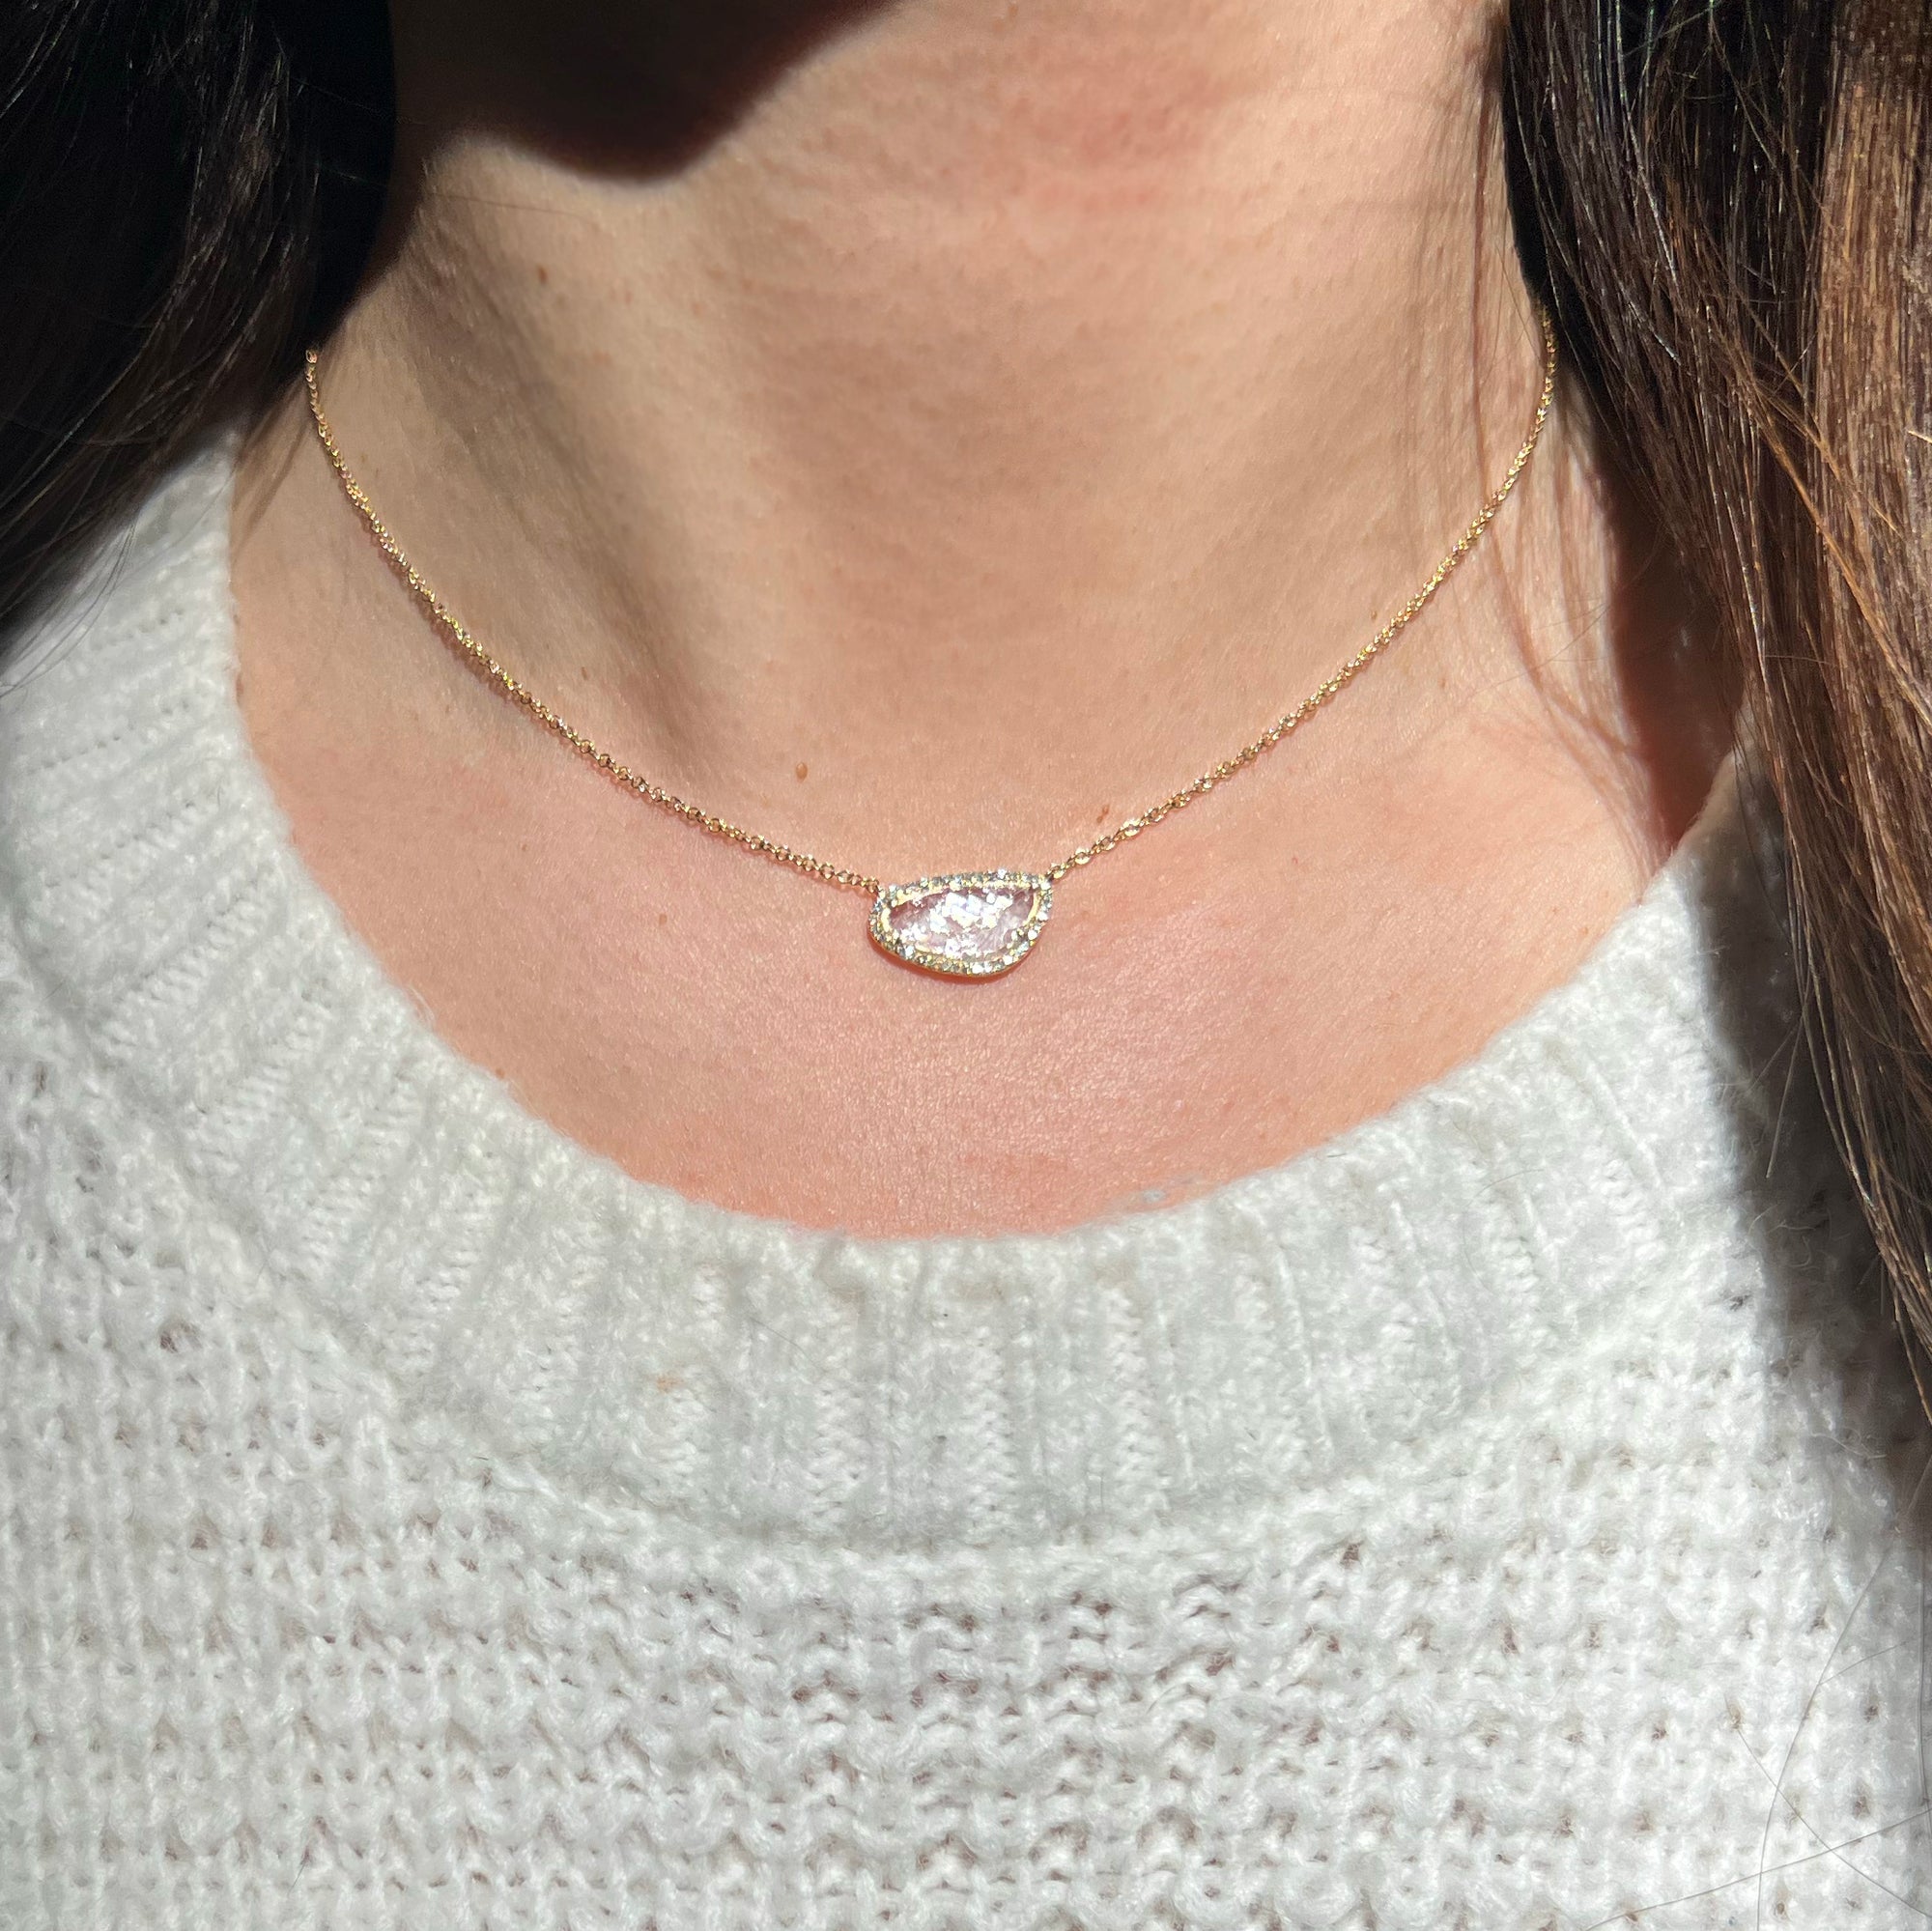 Diamond Slice Necklace in 14k Gold - Sparkle